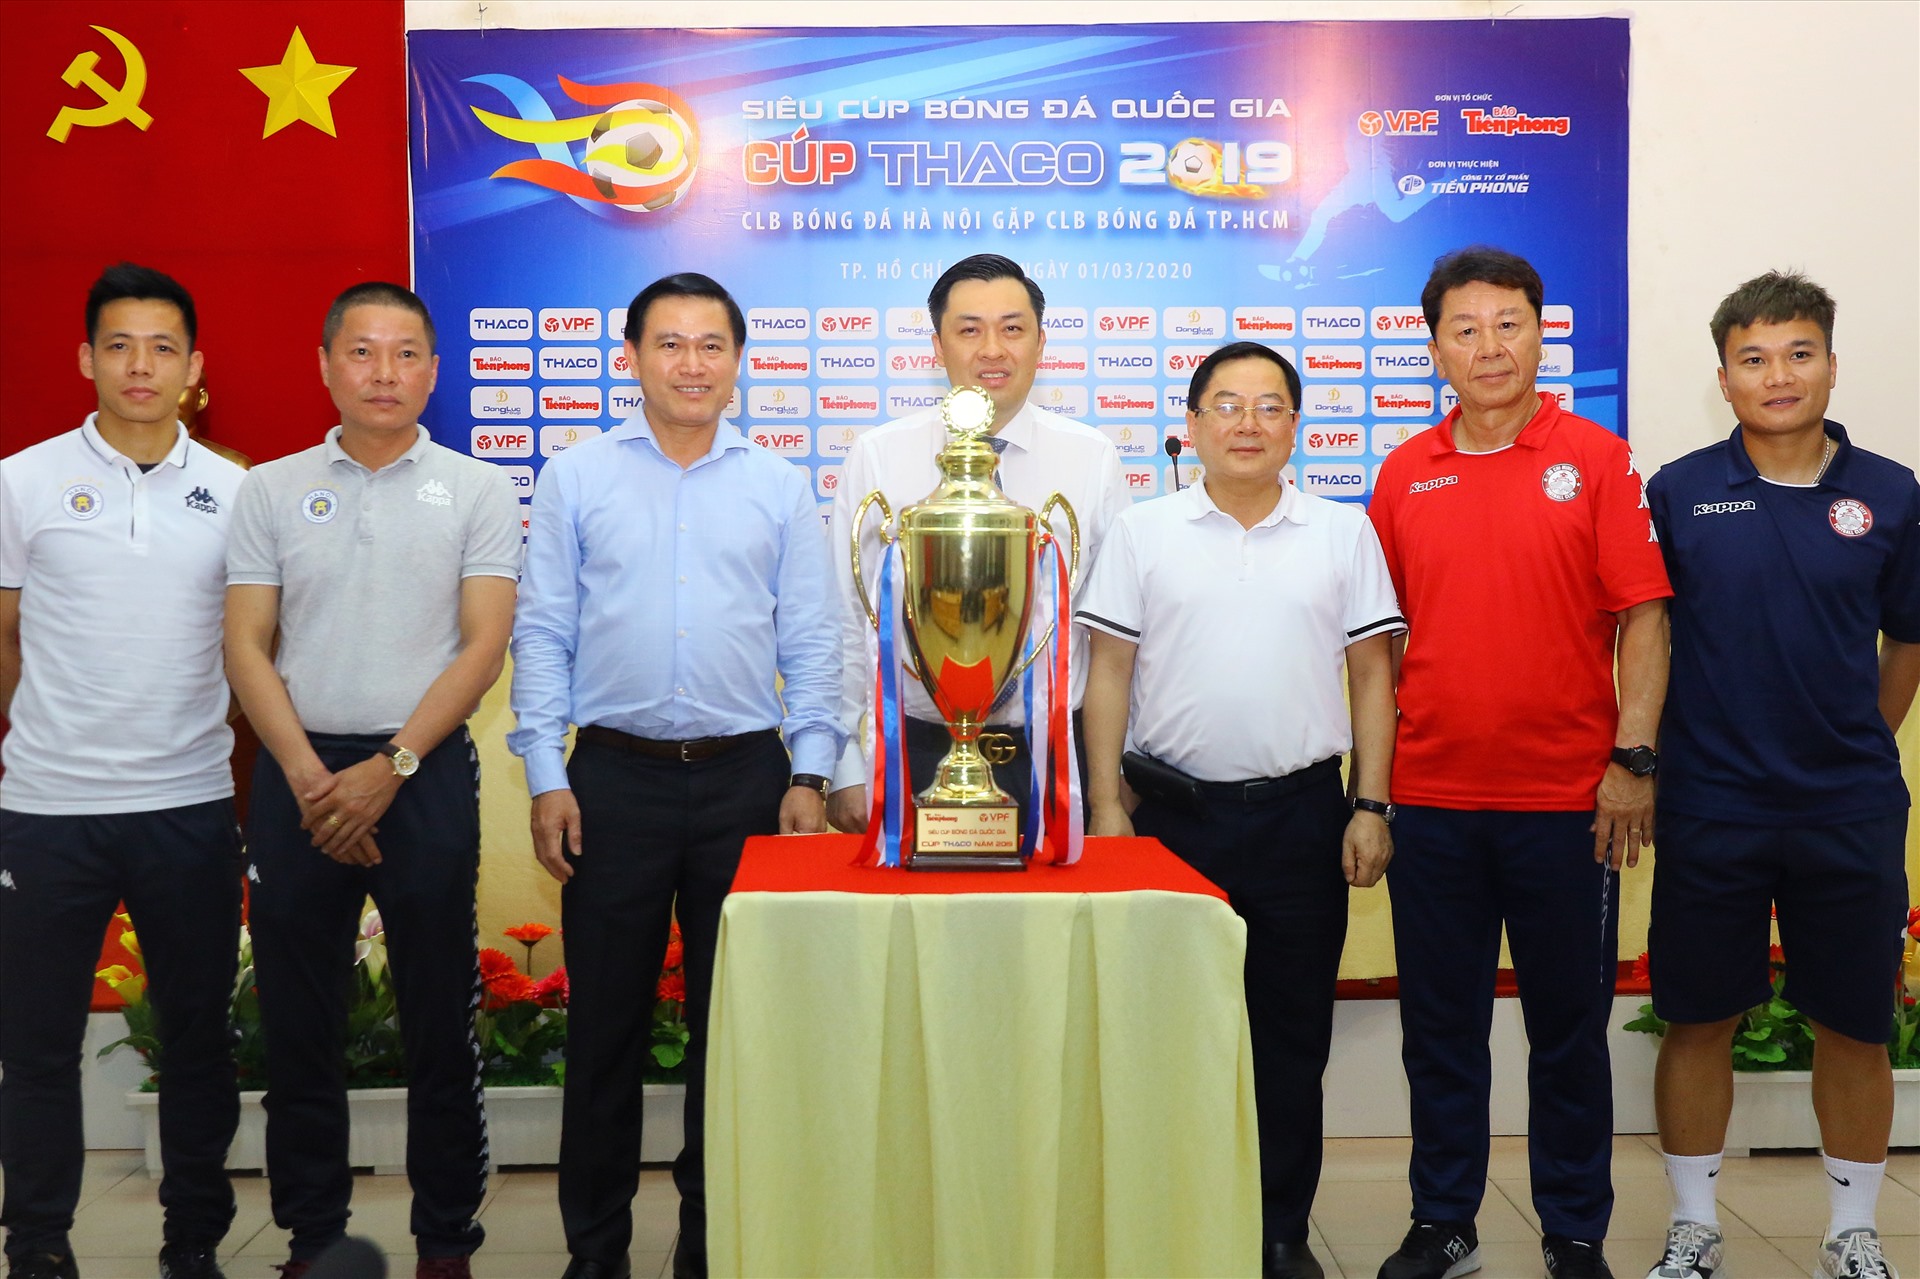 Huấn luyện viên Chung Hae-seong cùng câu lạc bộ TP.HCM mở màn mùa giải V.League 2020 bằng trận tranh Siêu cup với câu lạc bộ Hà Nội. Ảnh: Đ.V